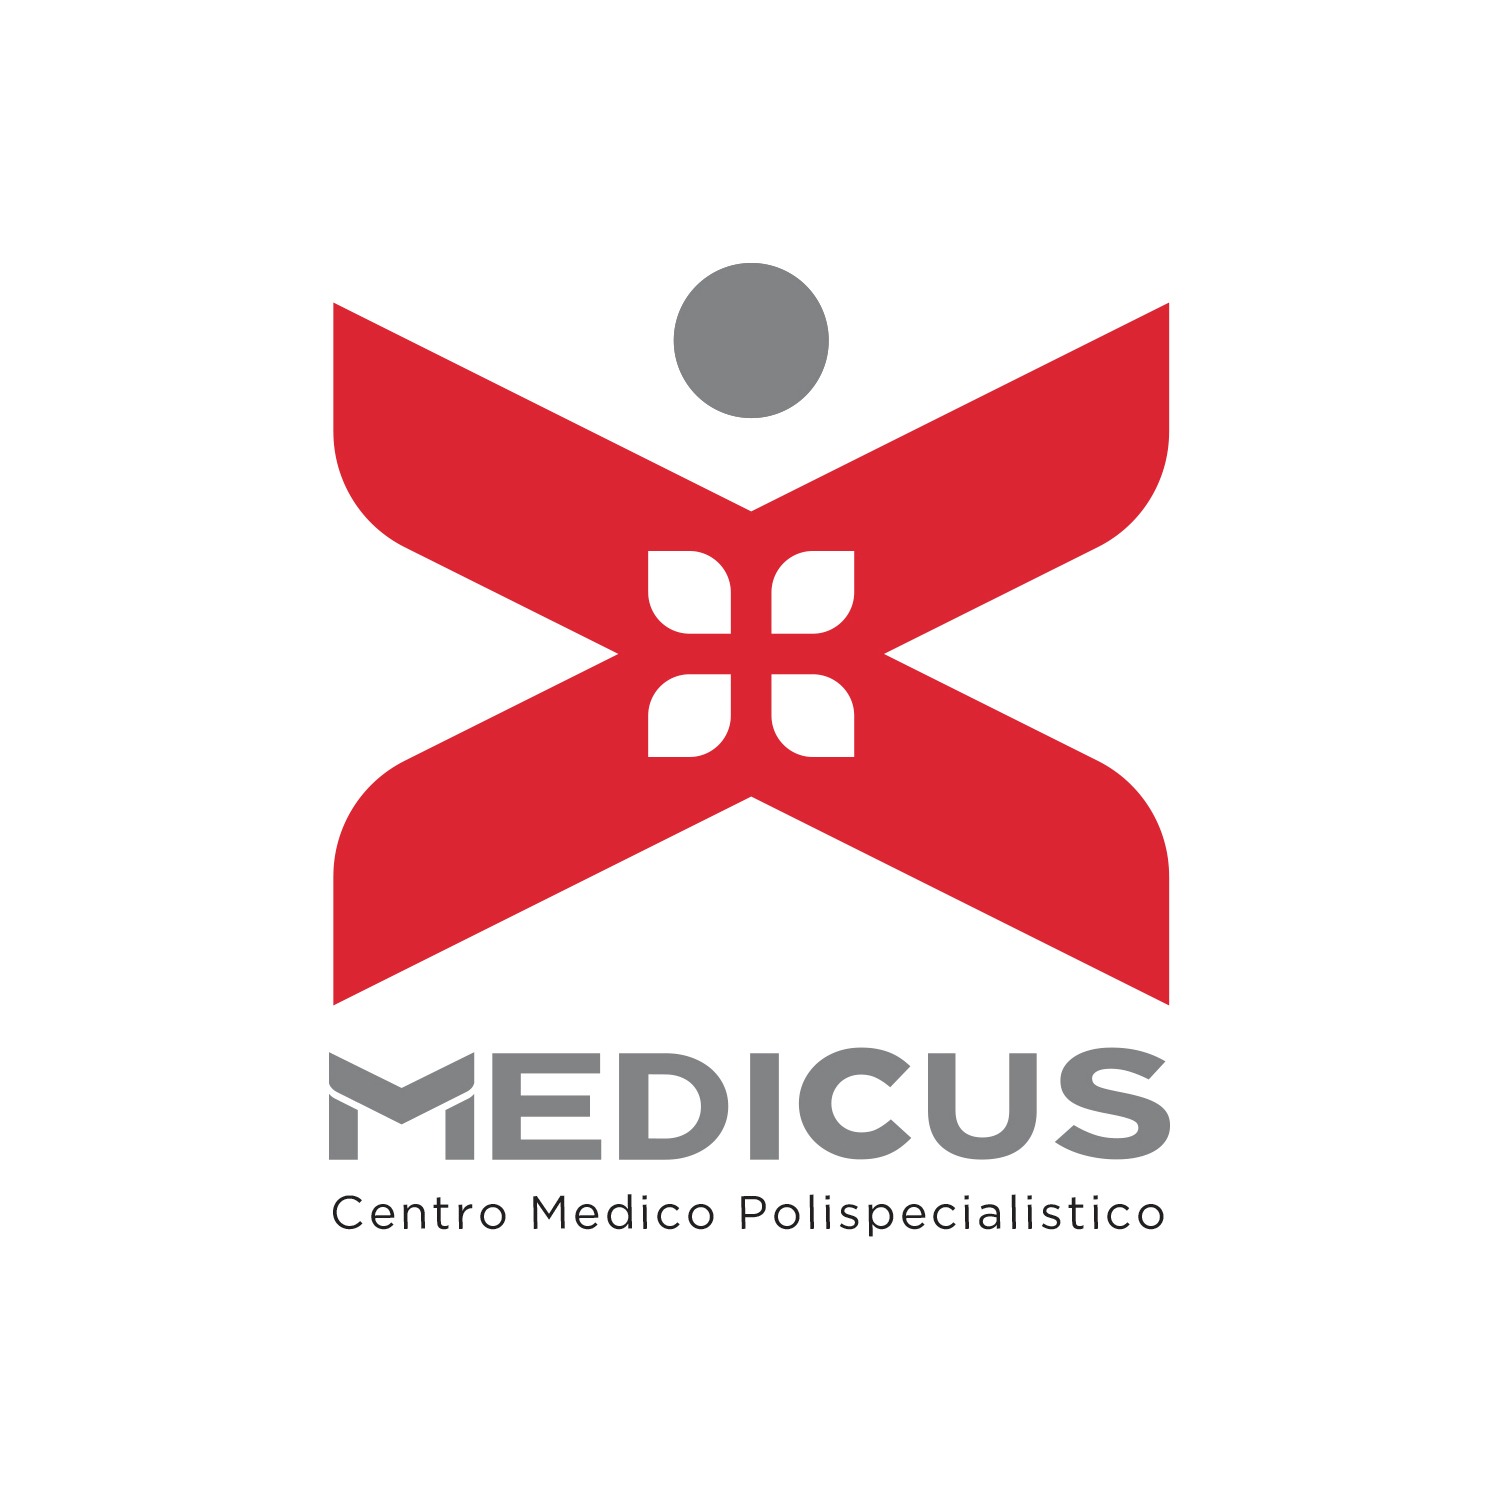 Centro Medico Polispecialistico Medicus